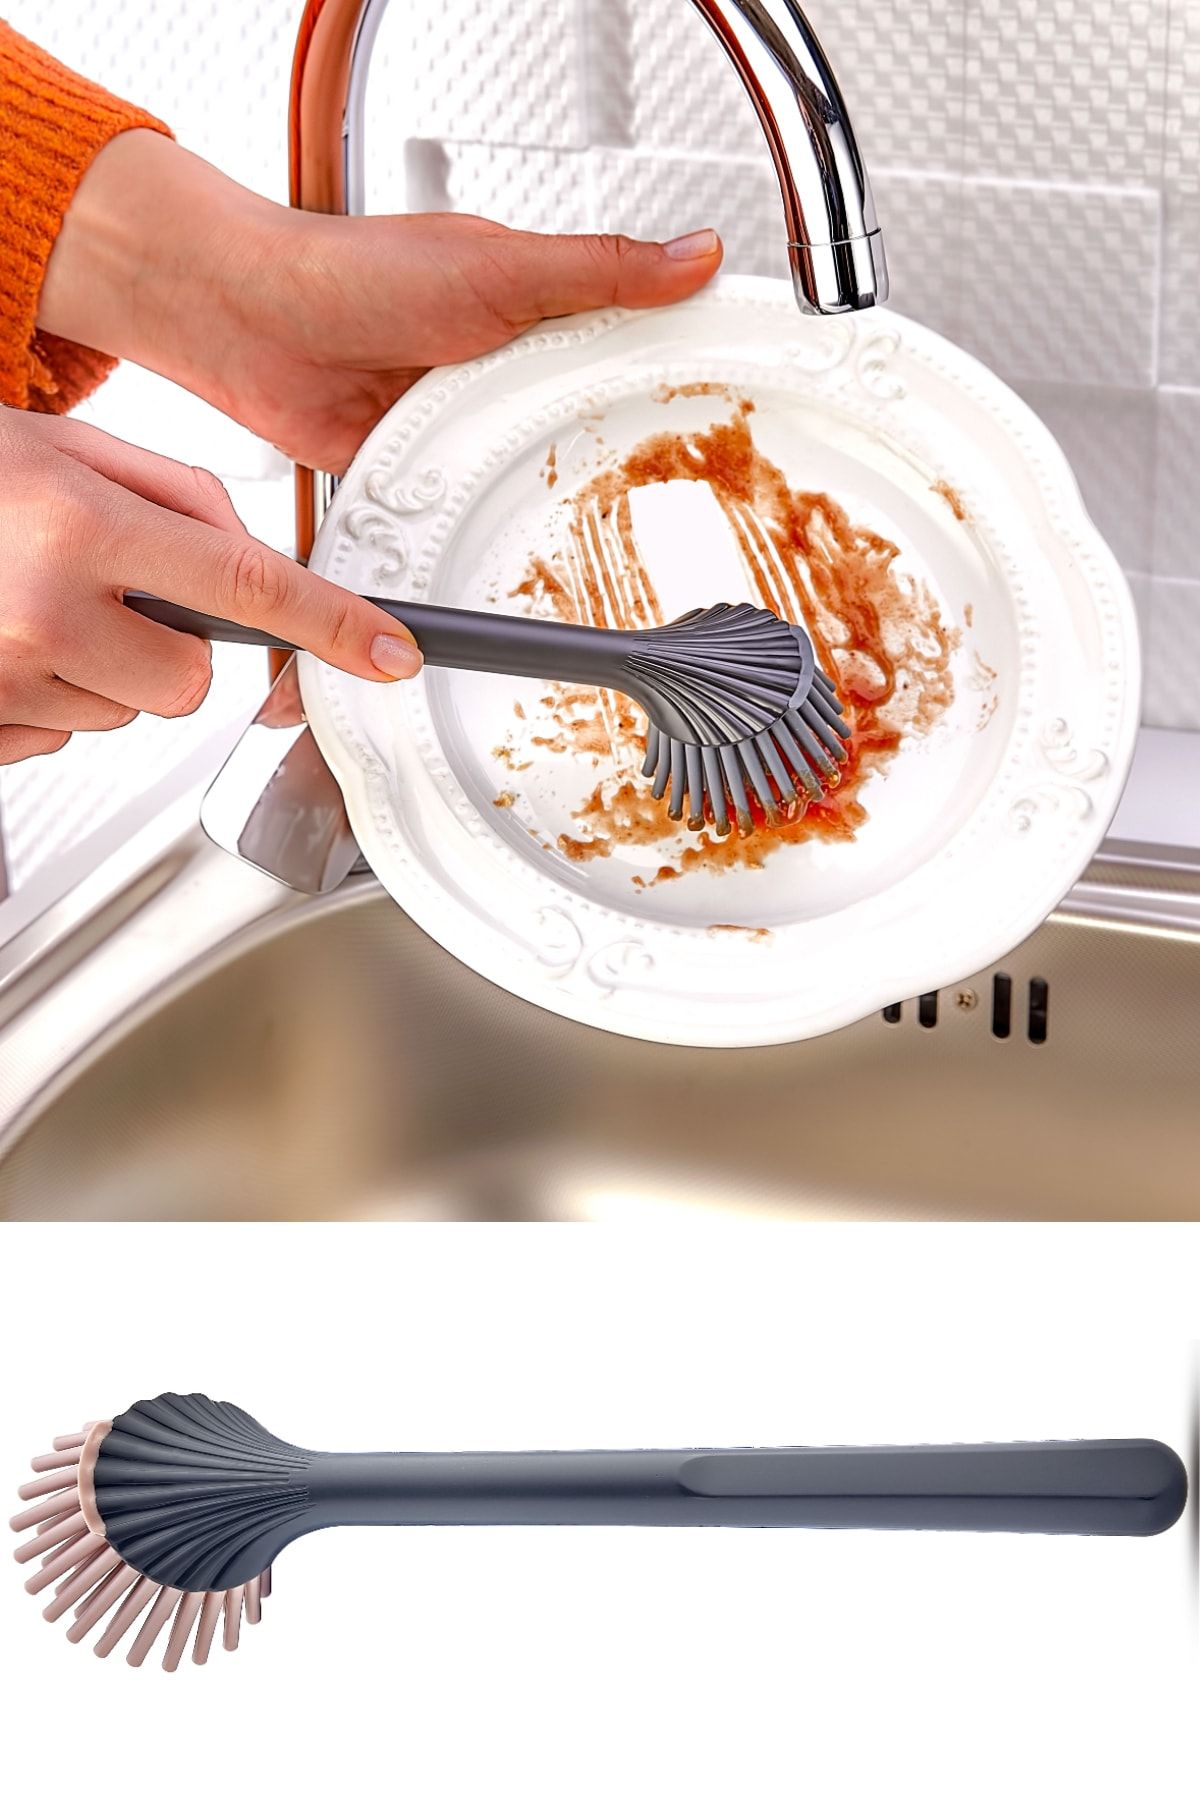 EARABUL Silikon Başlıklı Bulaşık Yıkama Ve Lavabo Temizleme Mutfak Tezgah Fırçası Gri-pembe